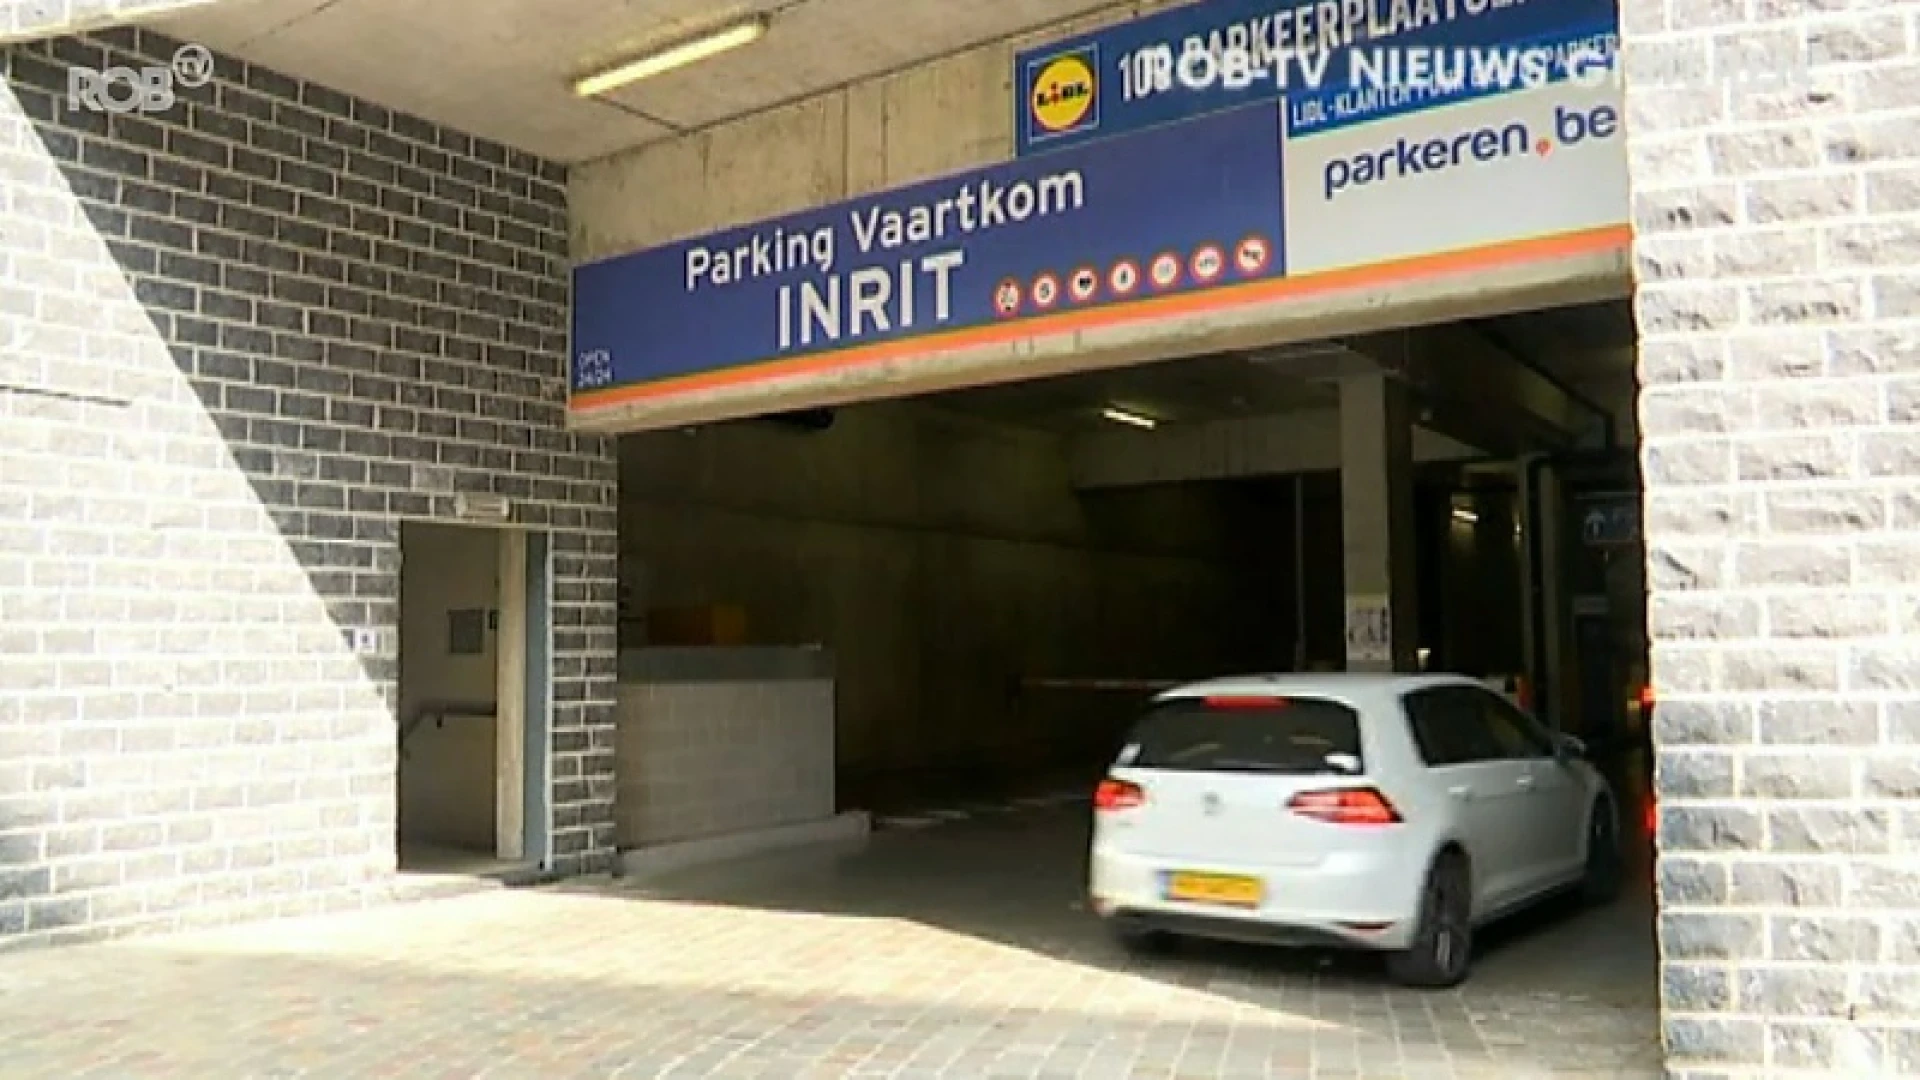 Parking Vaartkom betaald met overschot ocmw